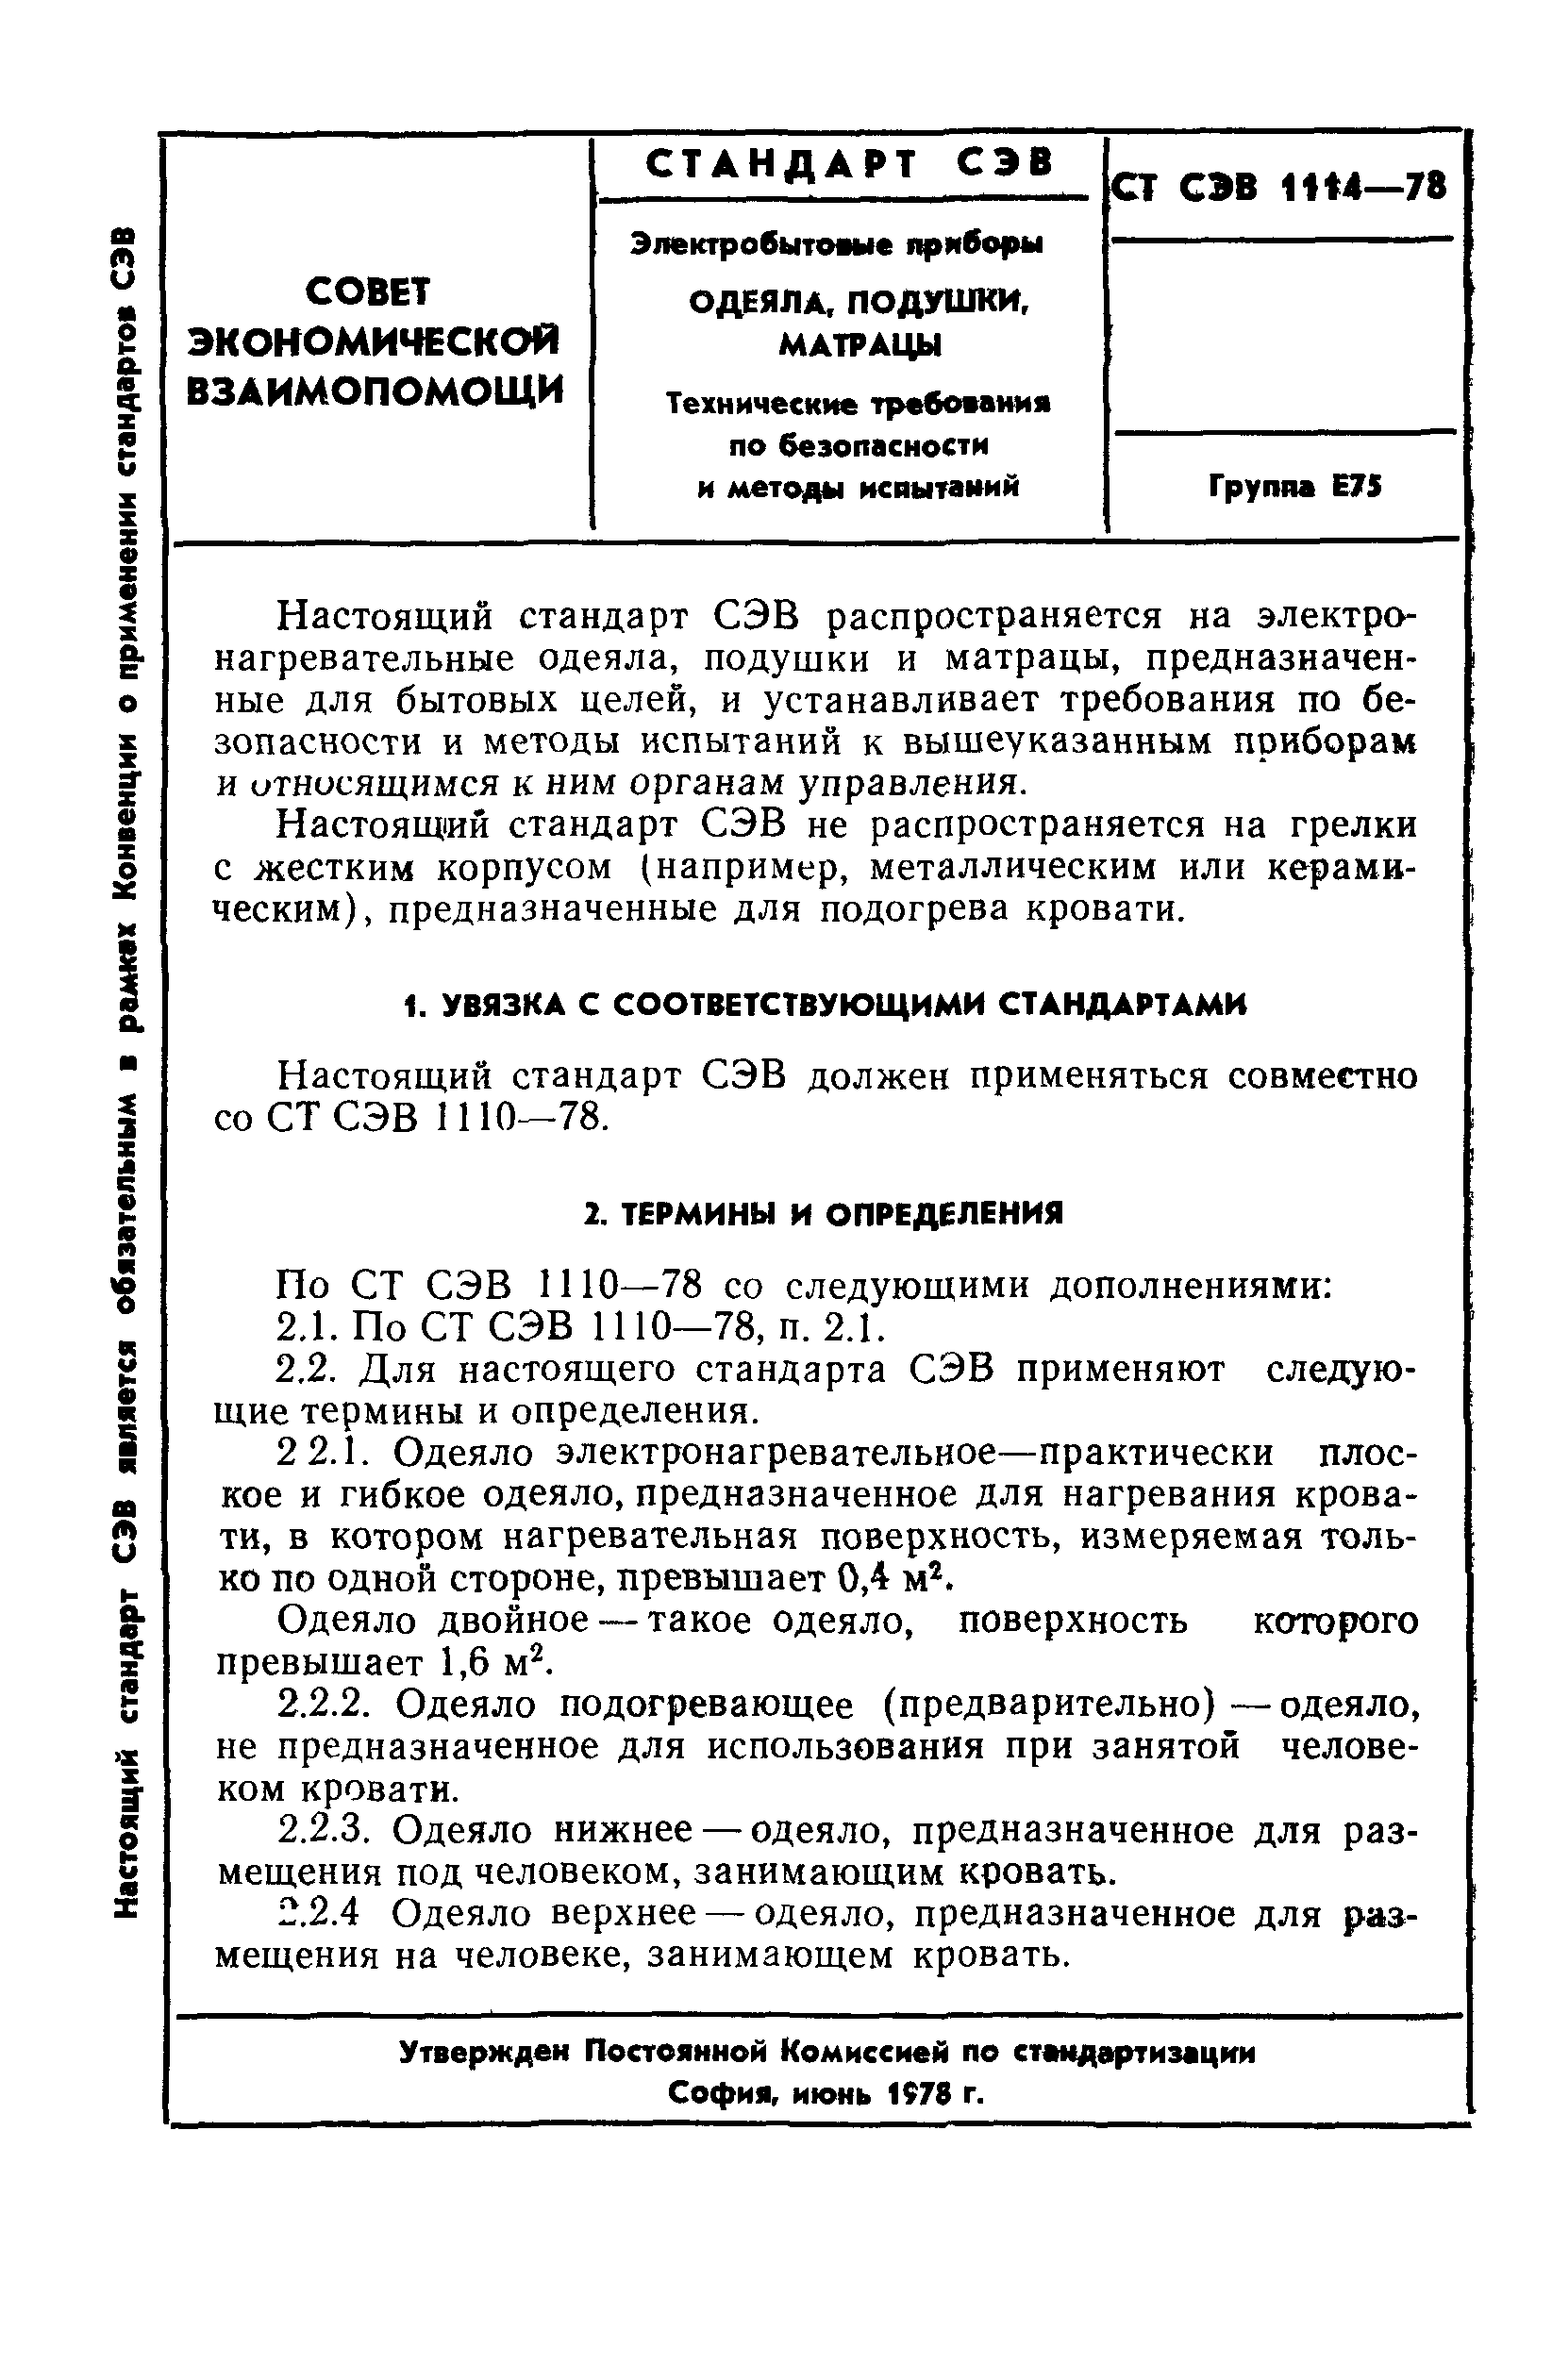 СТ СЭВ 1114-78